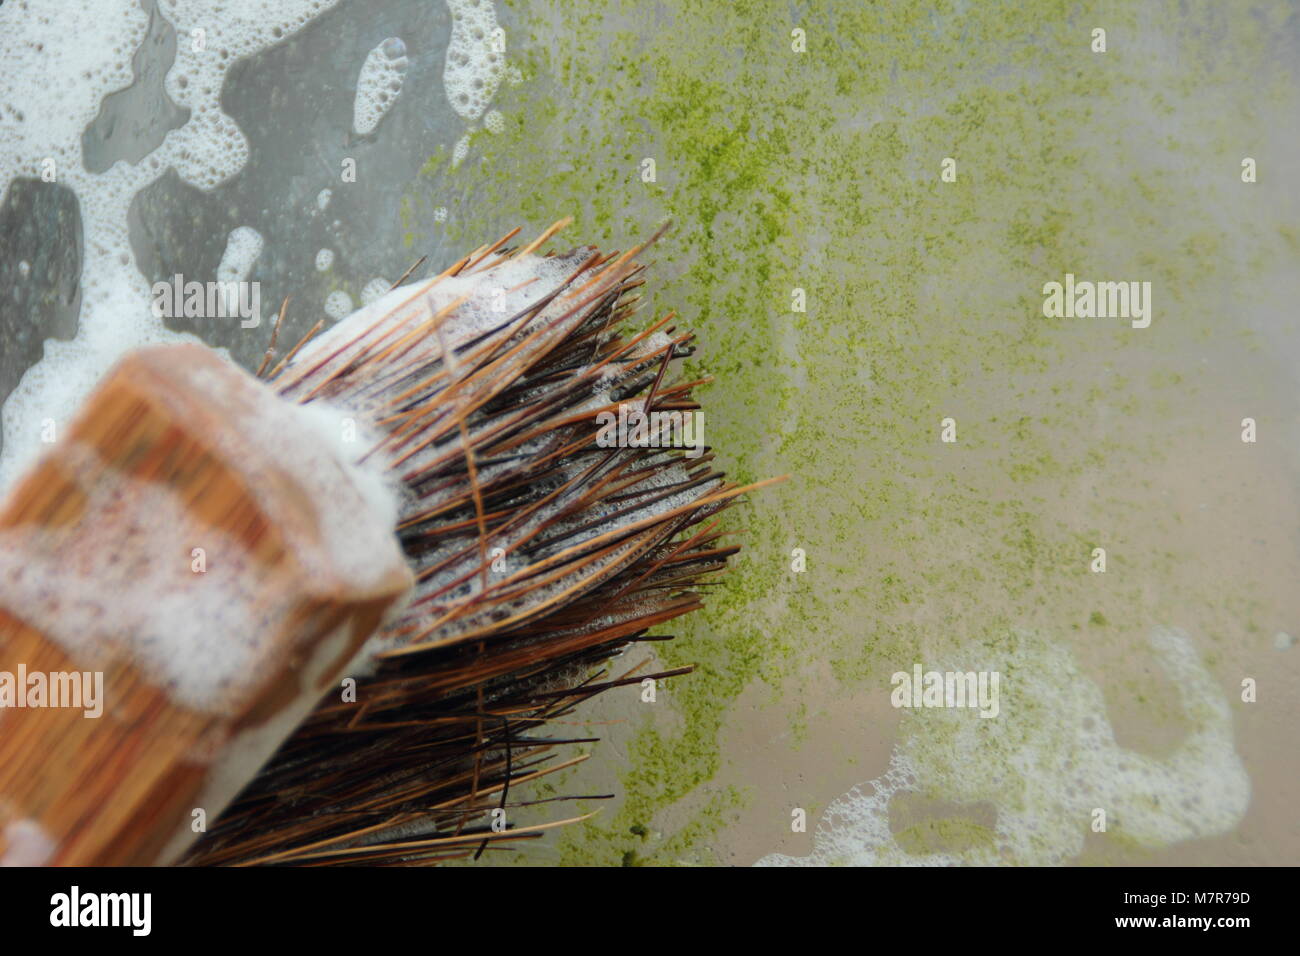 Le nettoyage d'un jardin, à effet de retirer les algues, de la mousse et la saleté pour laisser à la lumière et l'aider à contrôler les parasites et les maladies. Homme jardinier, UK Banque D'Images